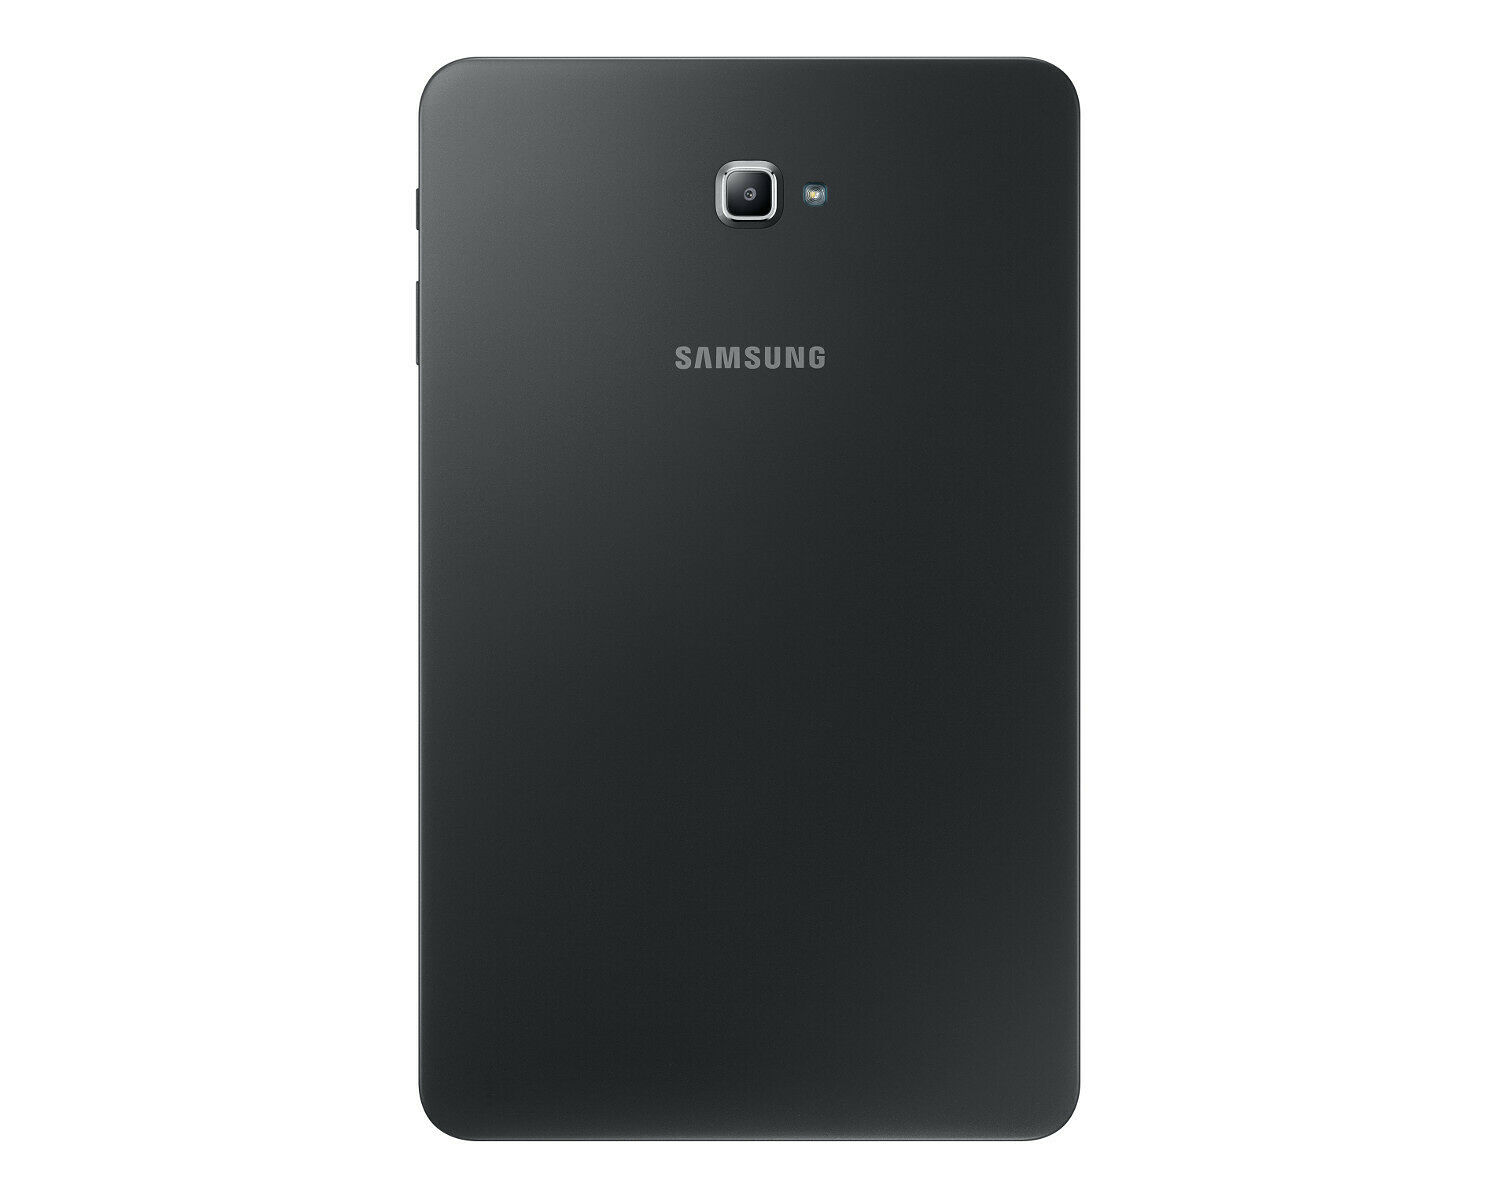 Samsung Galaxy Tab A 10.1 (2016) 32 Go 2 Go ram T580 Wifi Gris